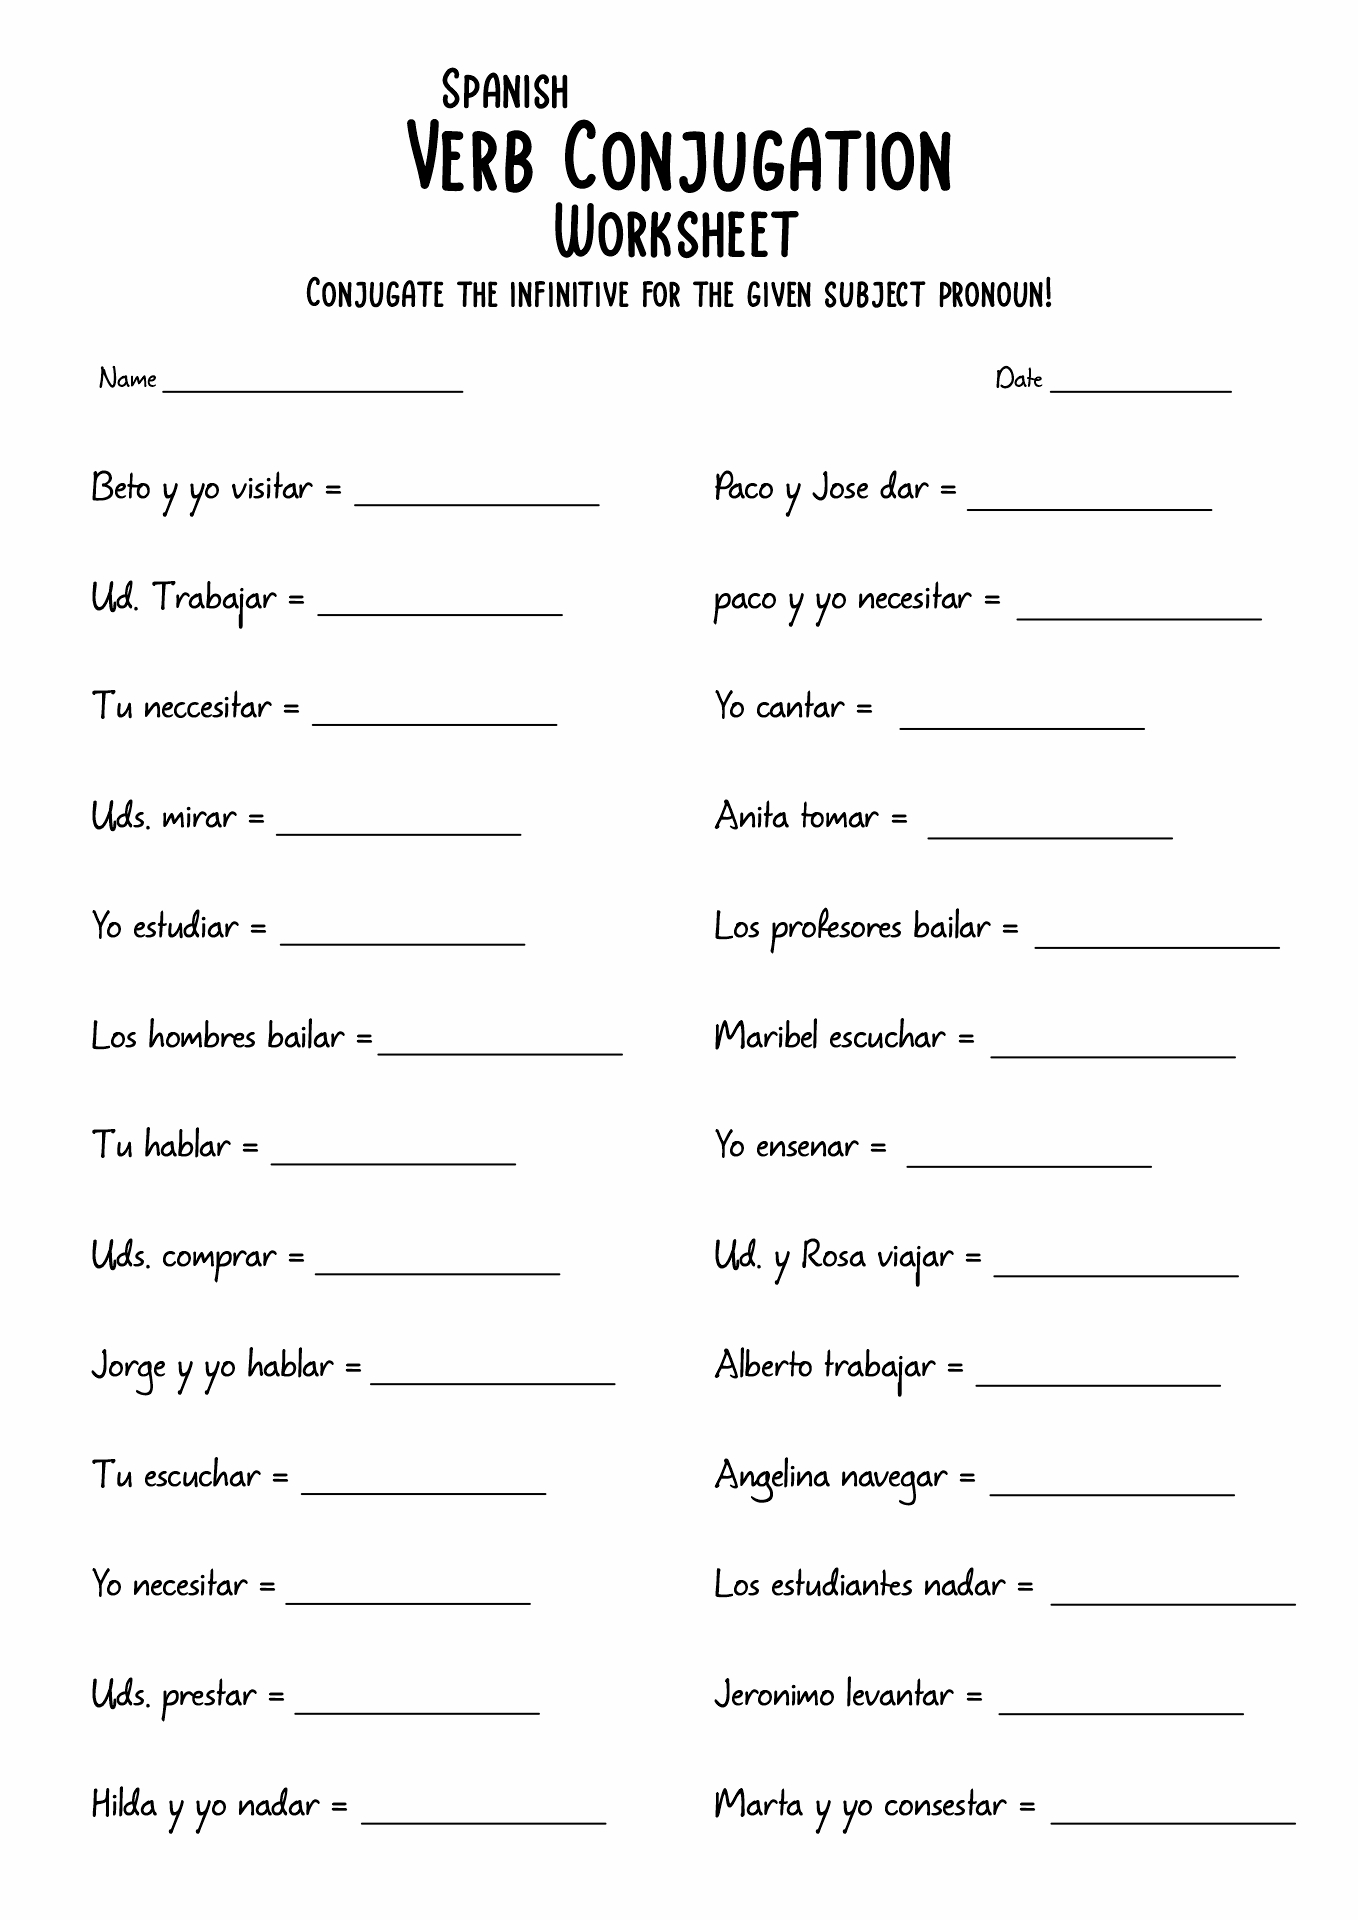 Spanish Verb Conjugation Worksheets Image